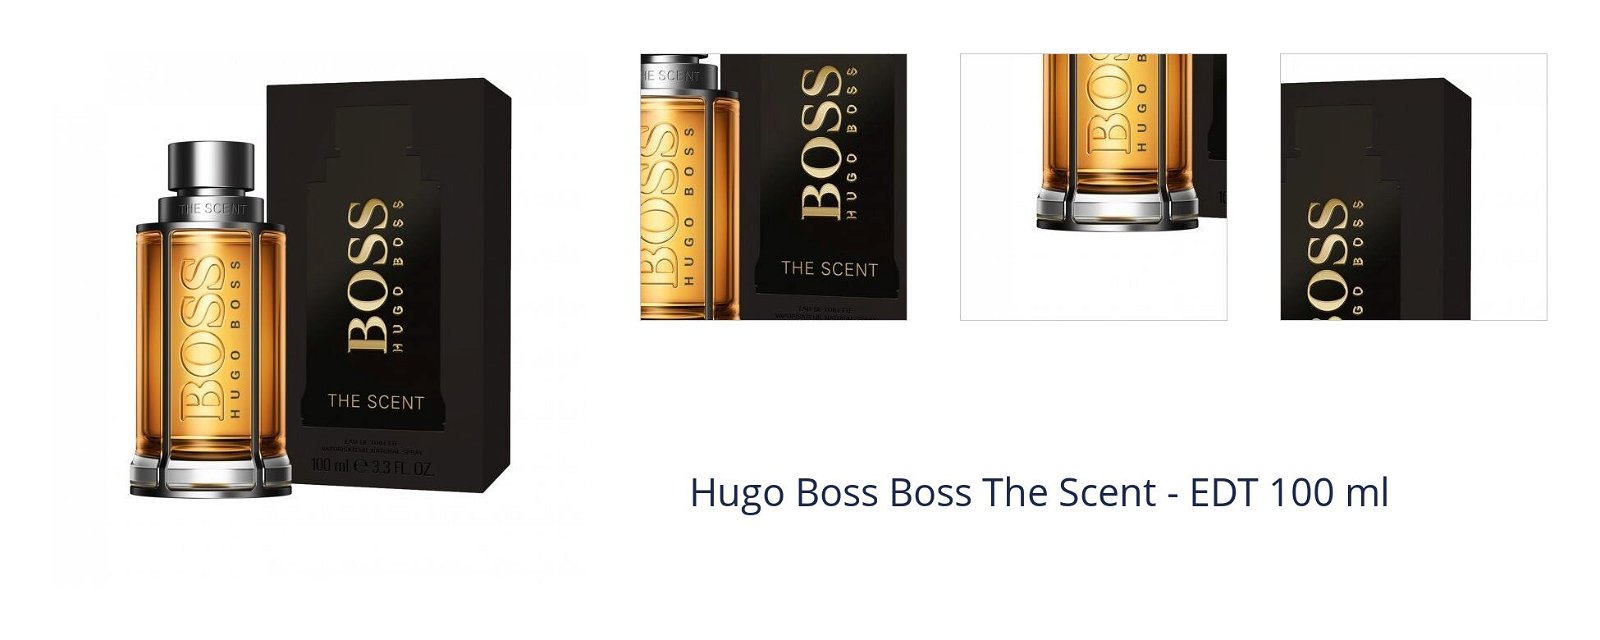 Hugo Boss Boss The Scent - EDT 100 ml 1